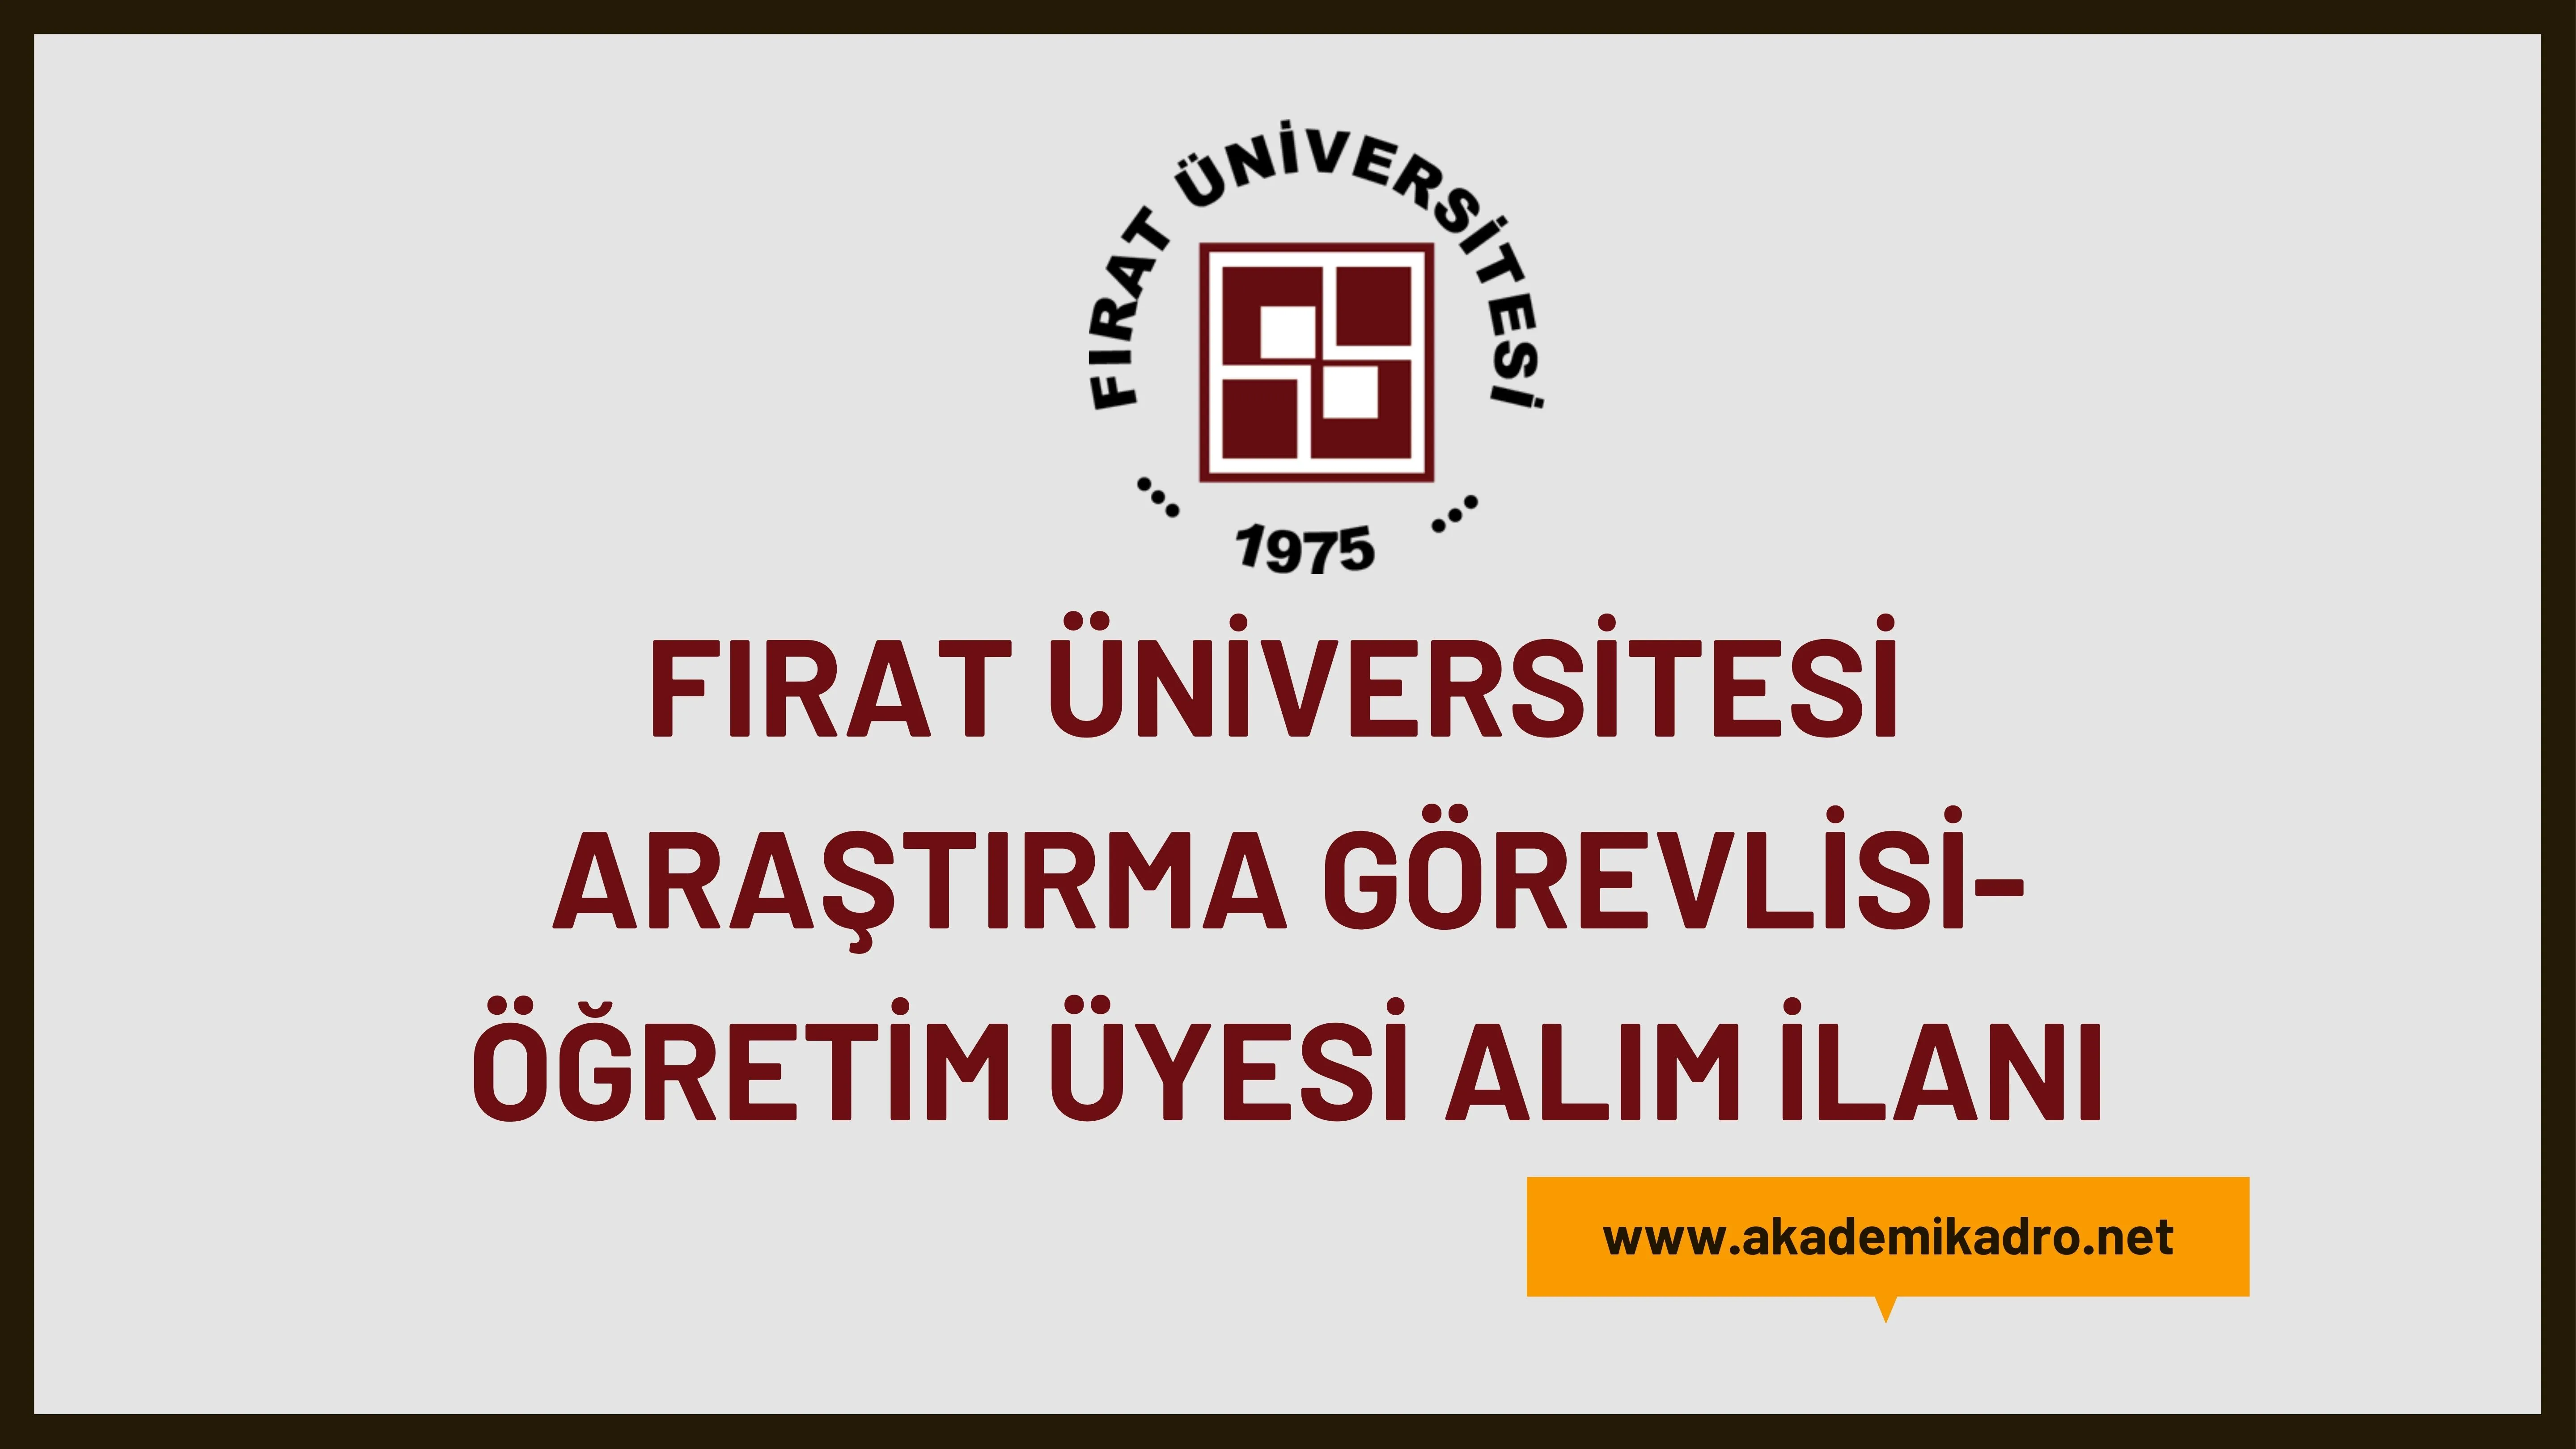 Fırat Üniversitesi birçok alandan 8 Araştırma görevlisi ve 83 Öğretim üyesi alacak.